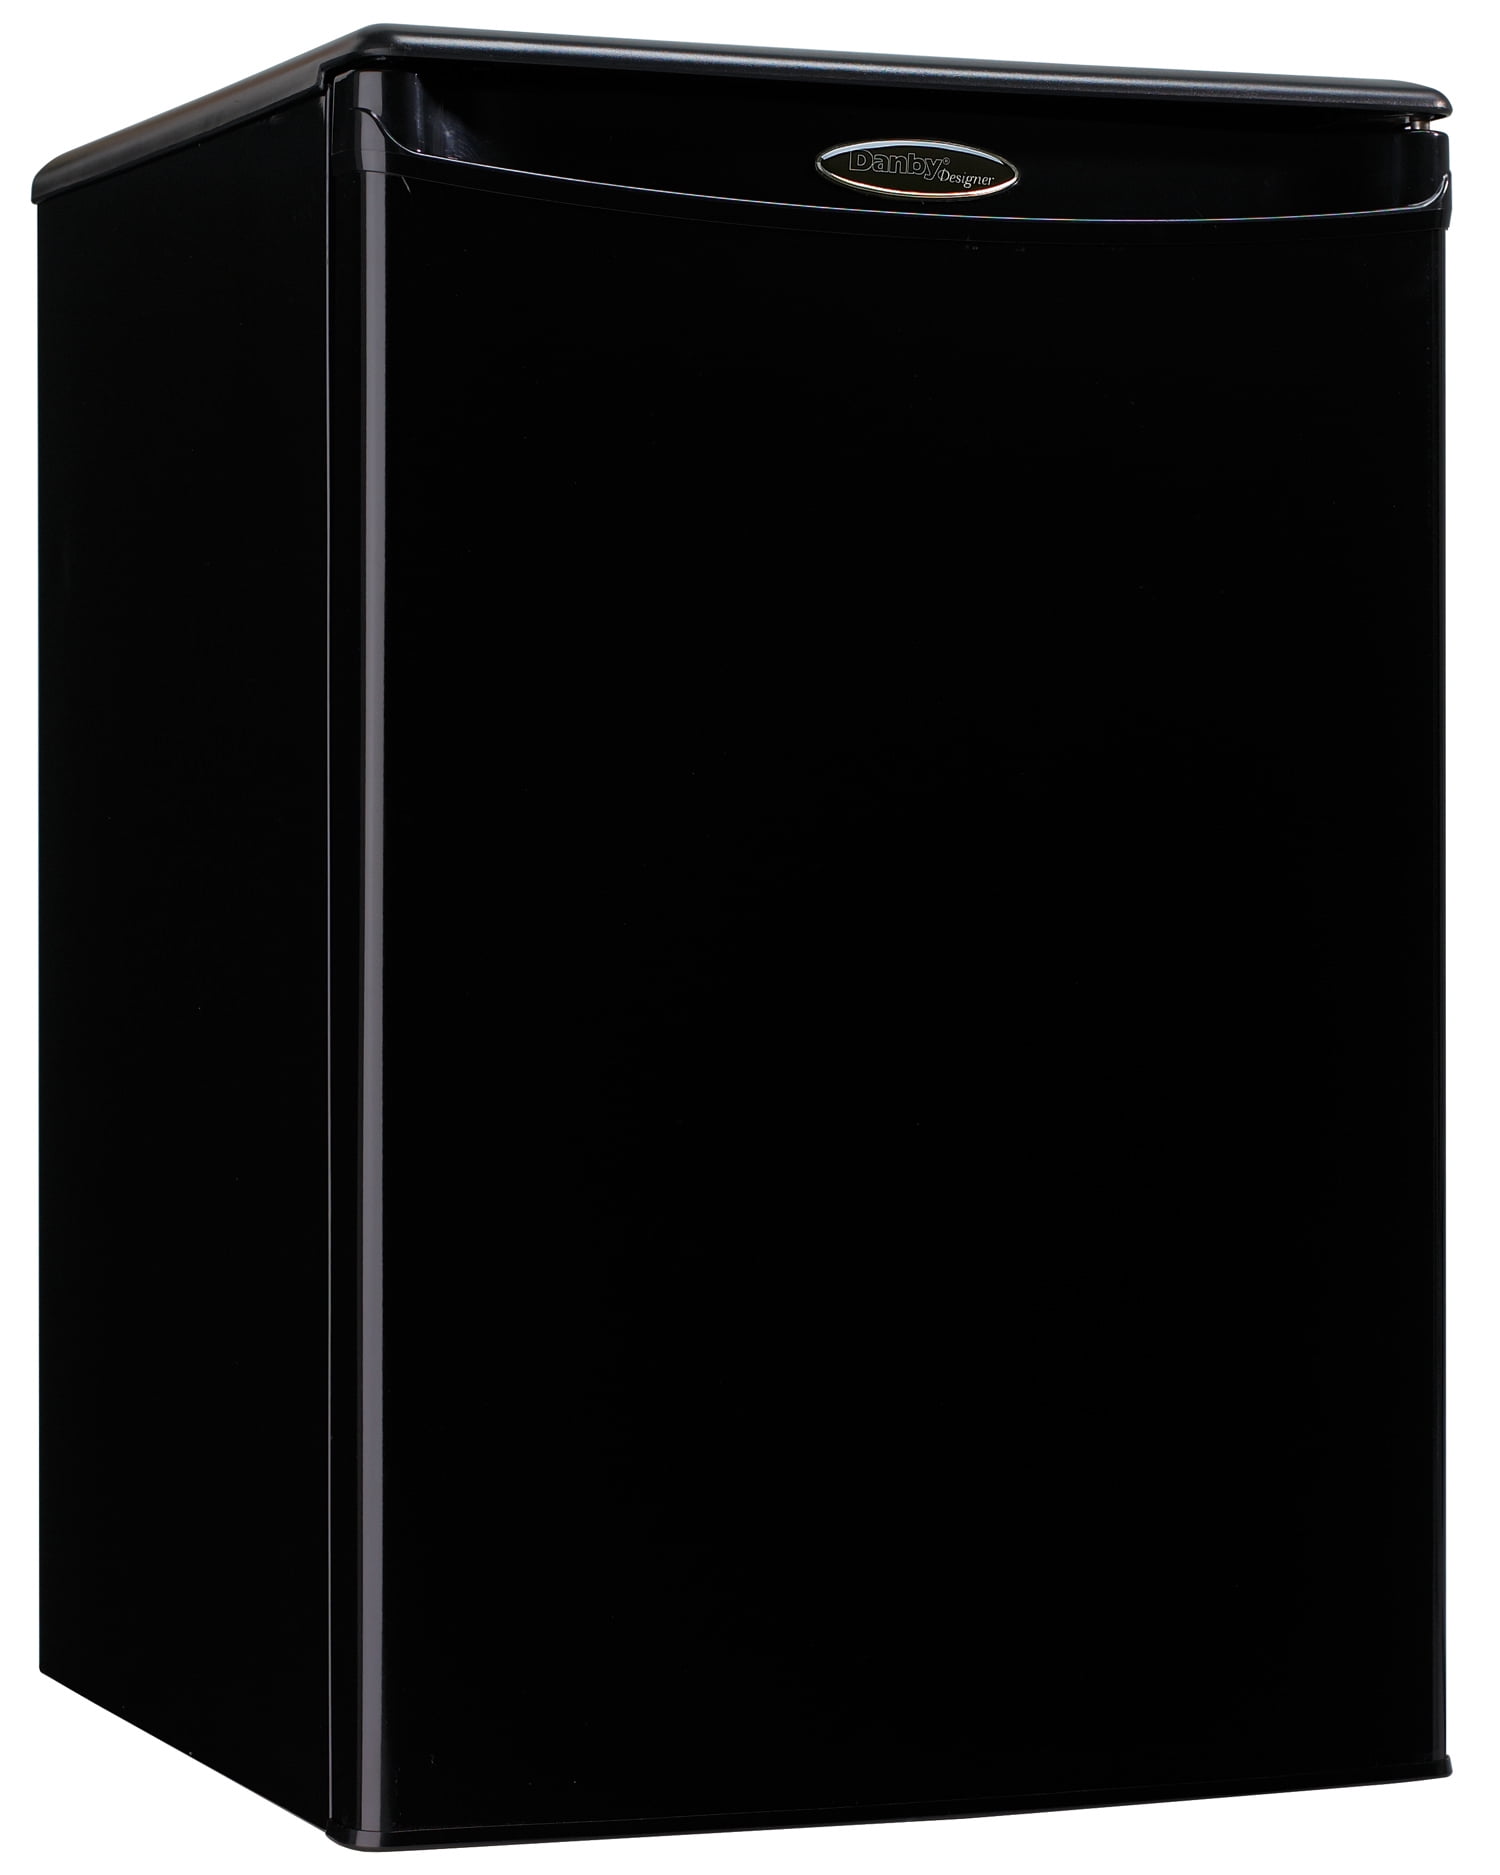 BLACK+DECKER BCRK25V 2.5 cu. ft. Energy Star Refrigerator with Freezer,  Silver 